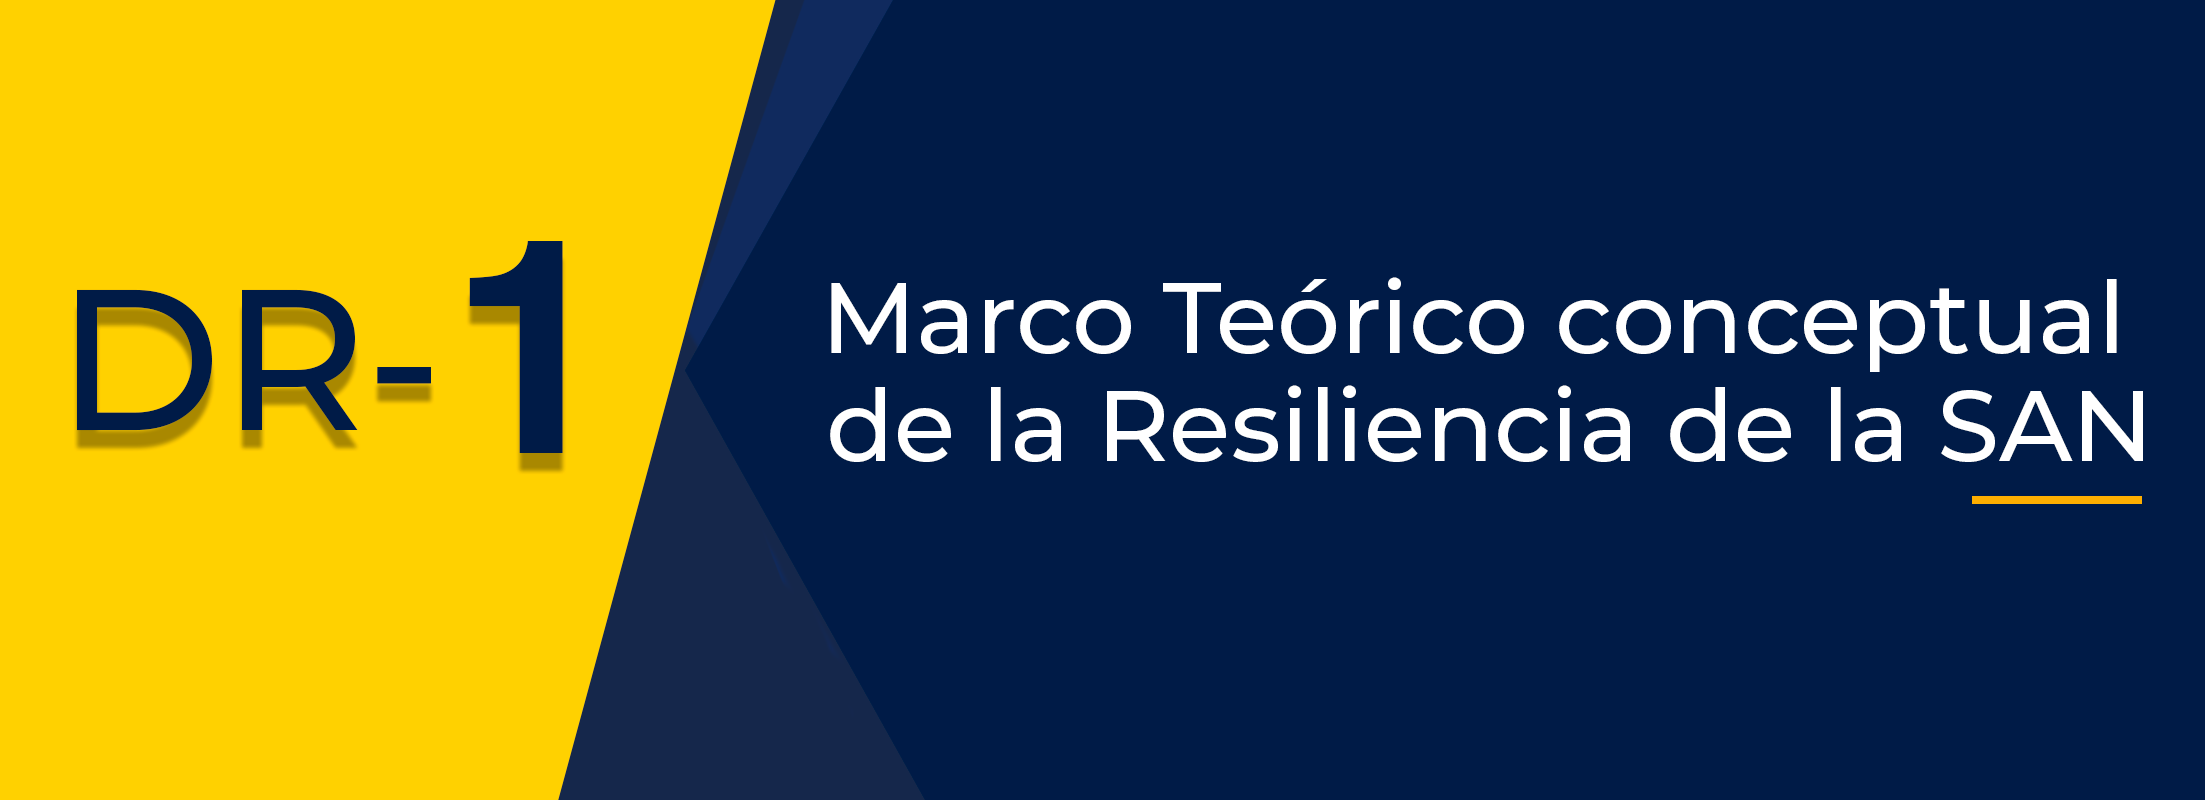 DR 1. Marco teórico conceptual de la resiliencia de la SAN (DIRESAN III-2021)